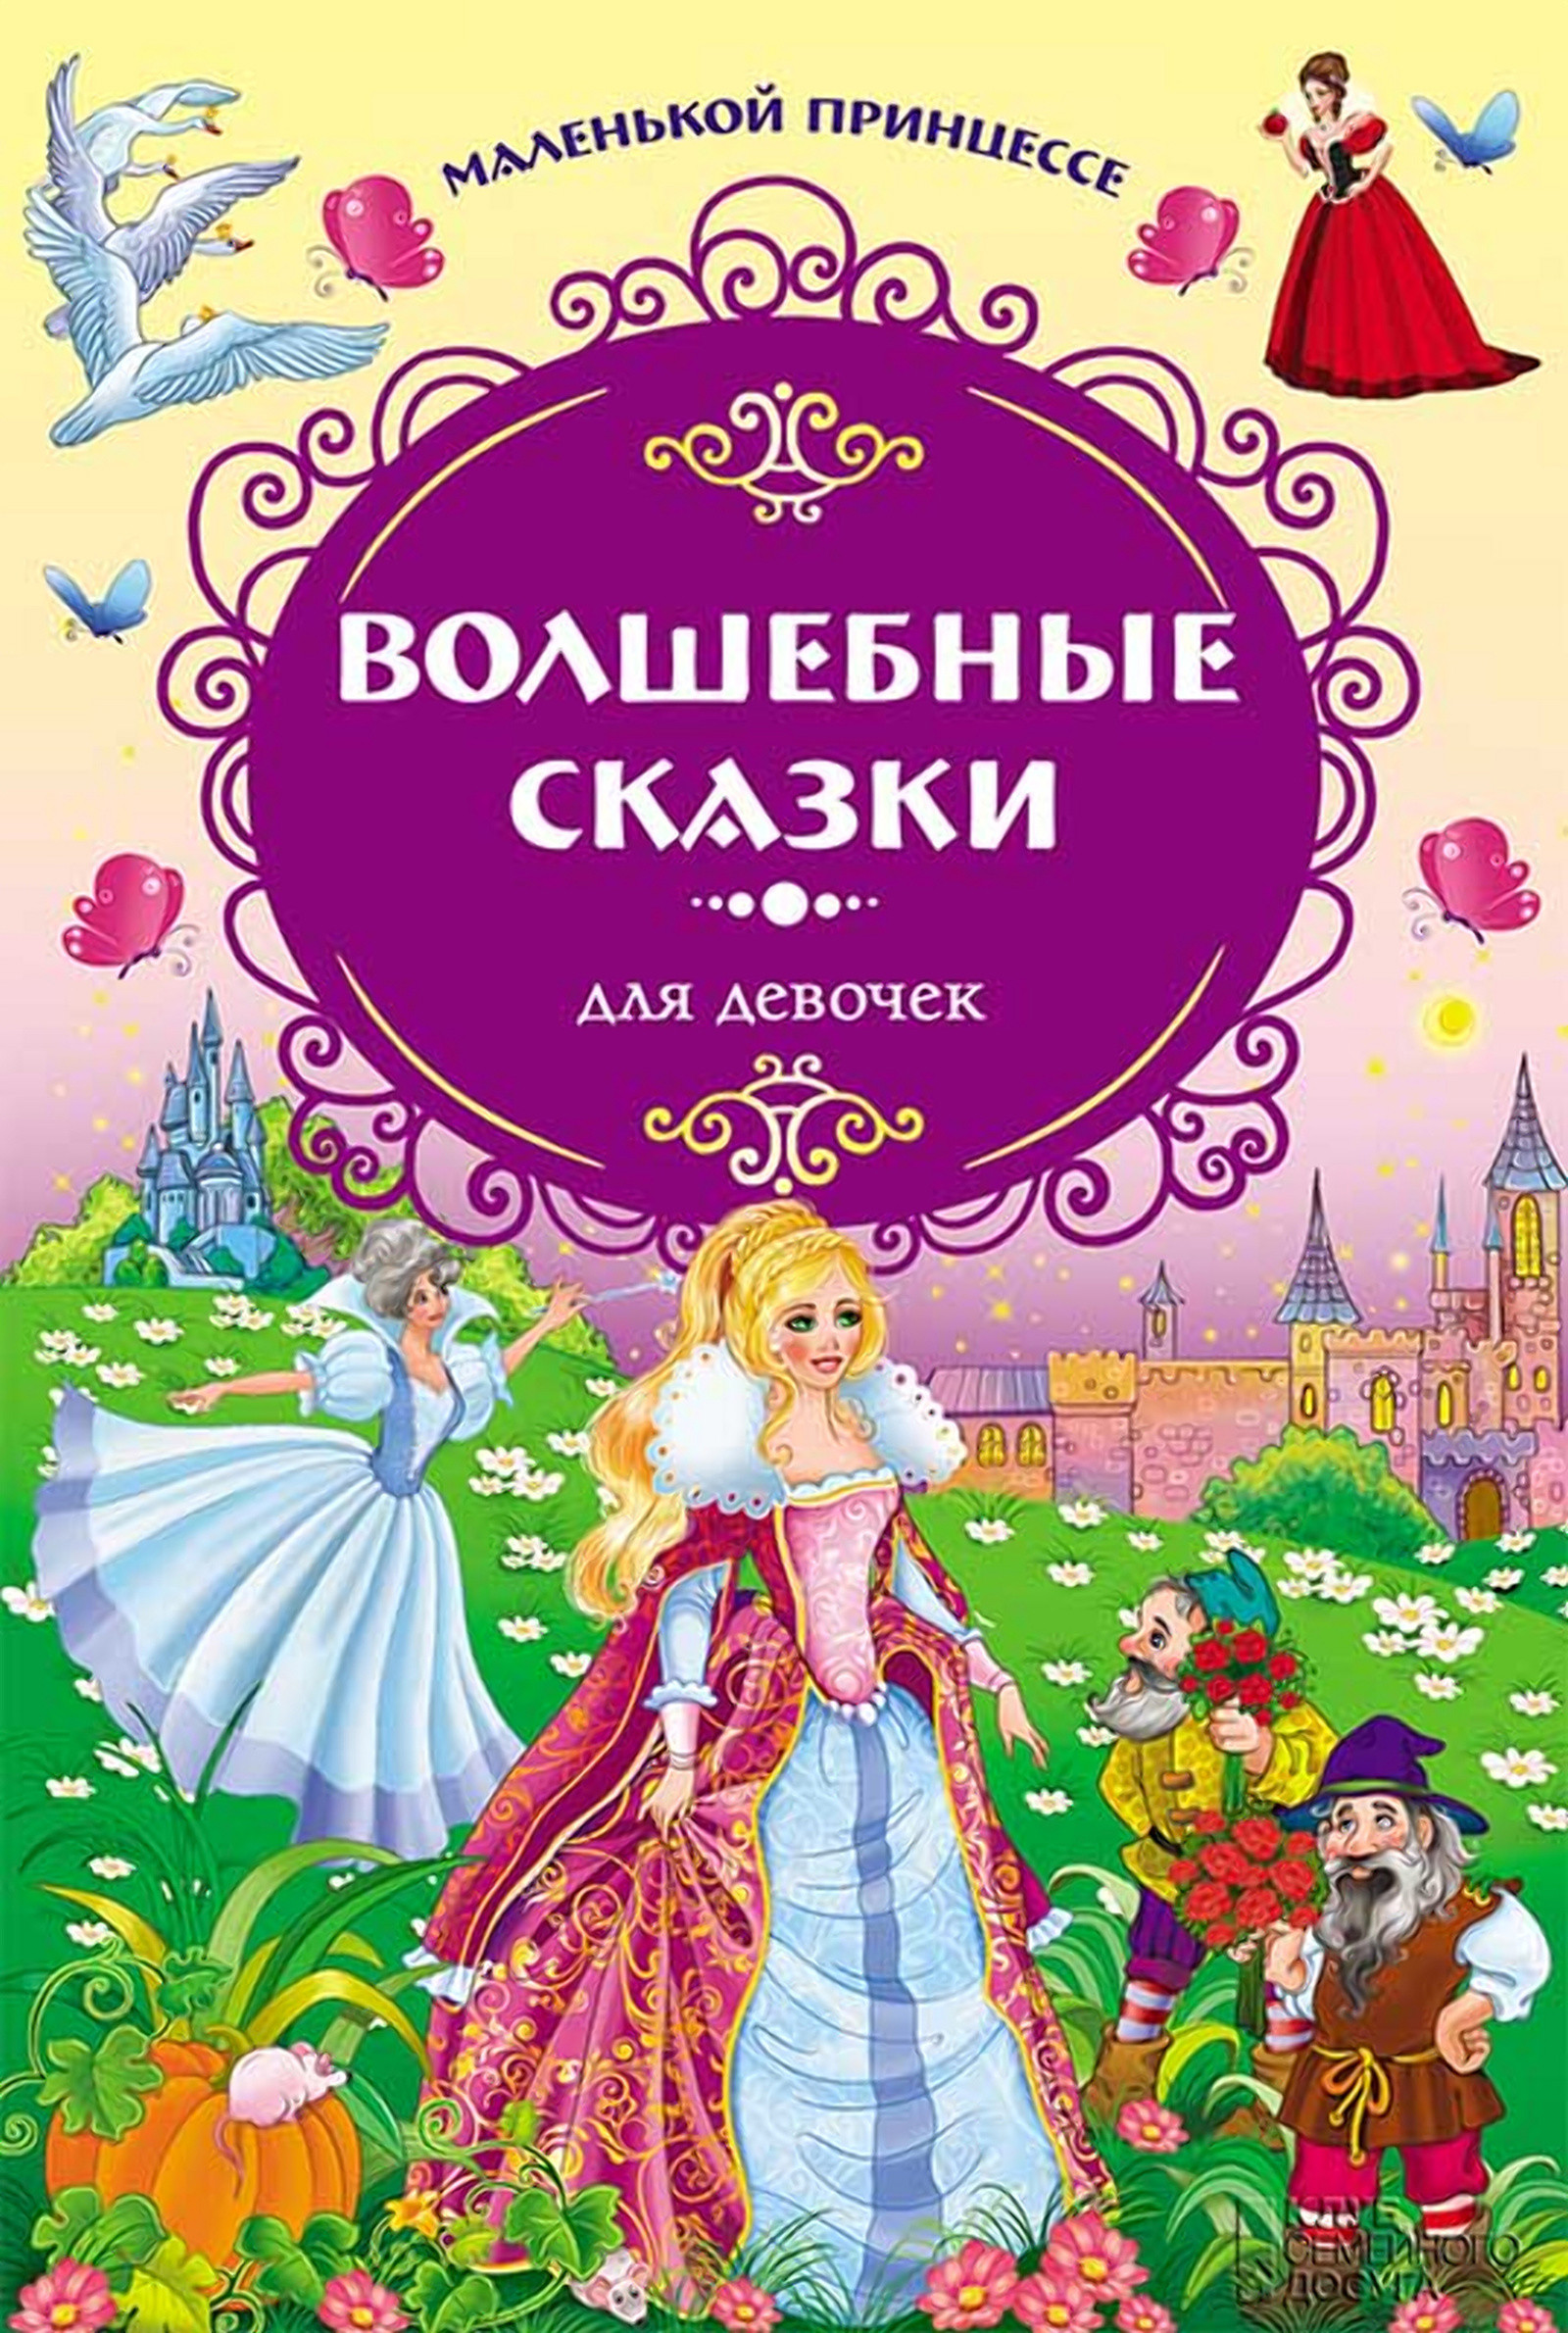 Сказки для детей читать 6 7 девочек. Книга сказок для маленькой принцессы. Маленькой принцессе. Волшебные сказки для девочек. Книга принцесса. Книжки про принцесс для девочек.